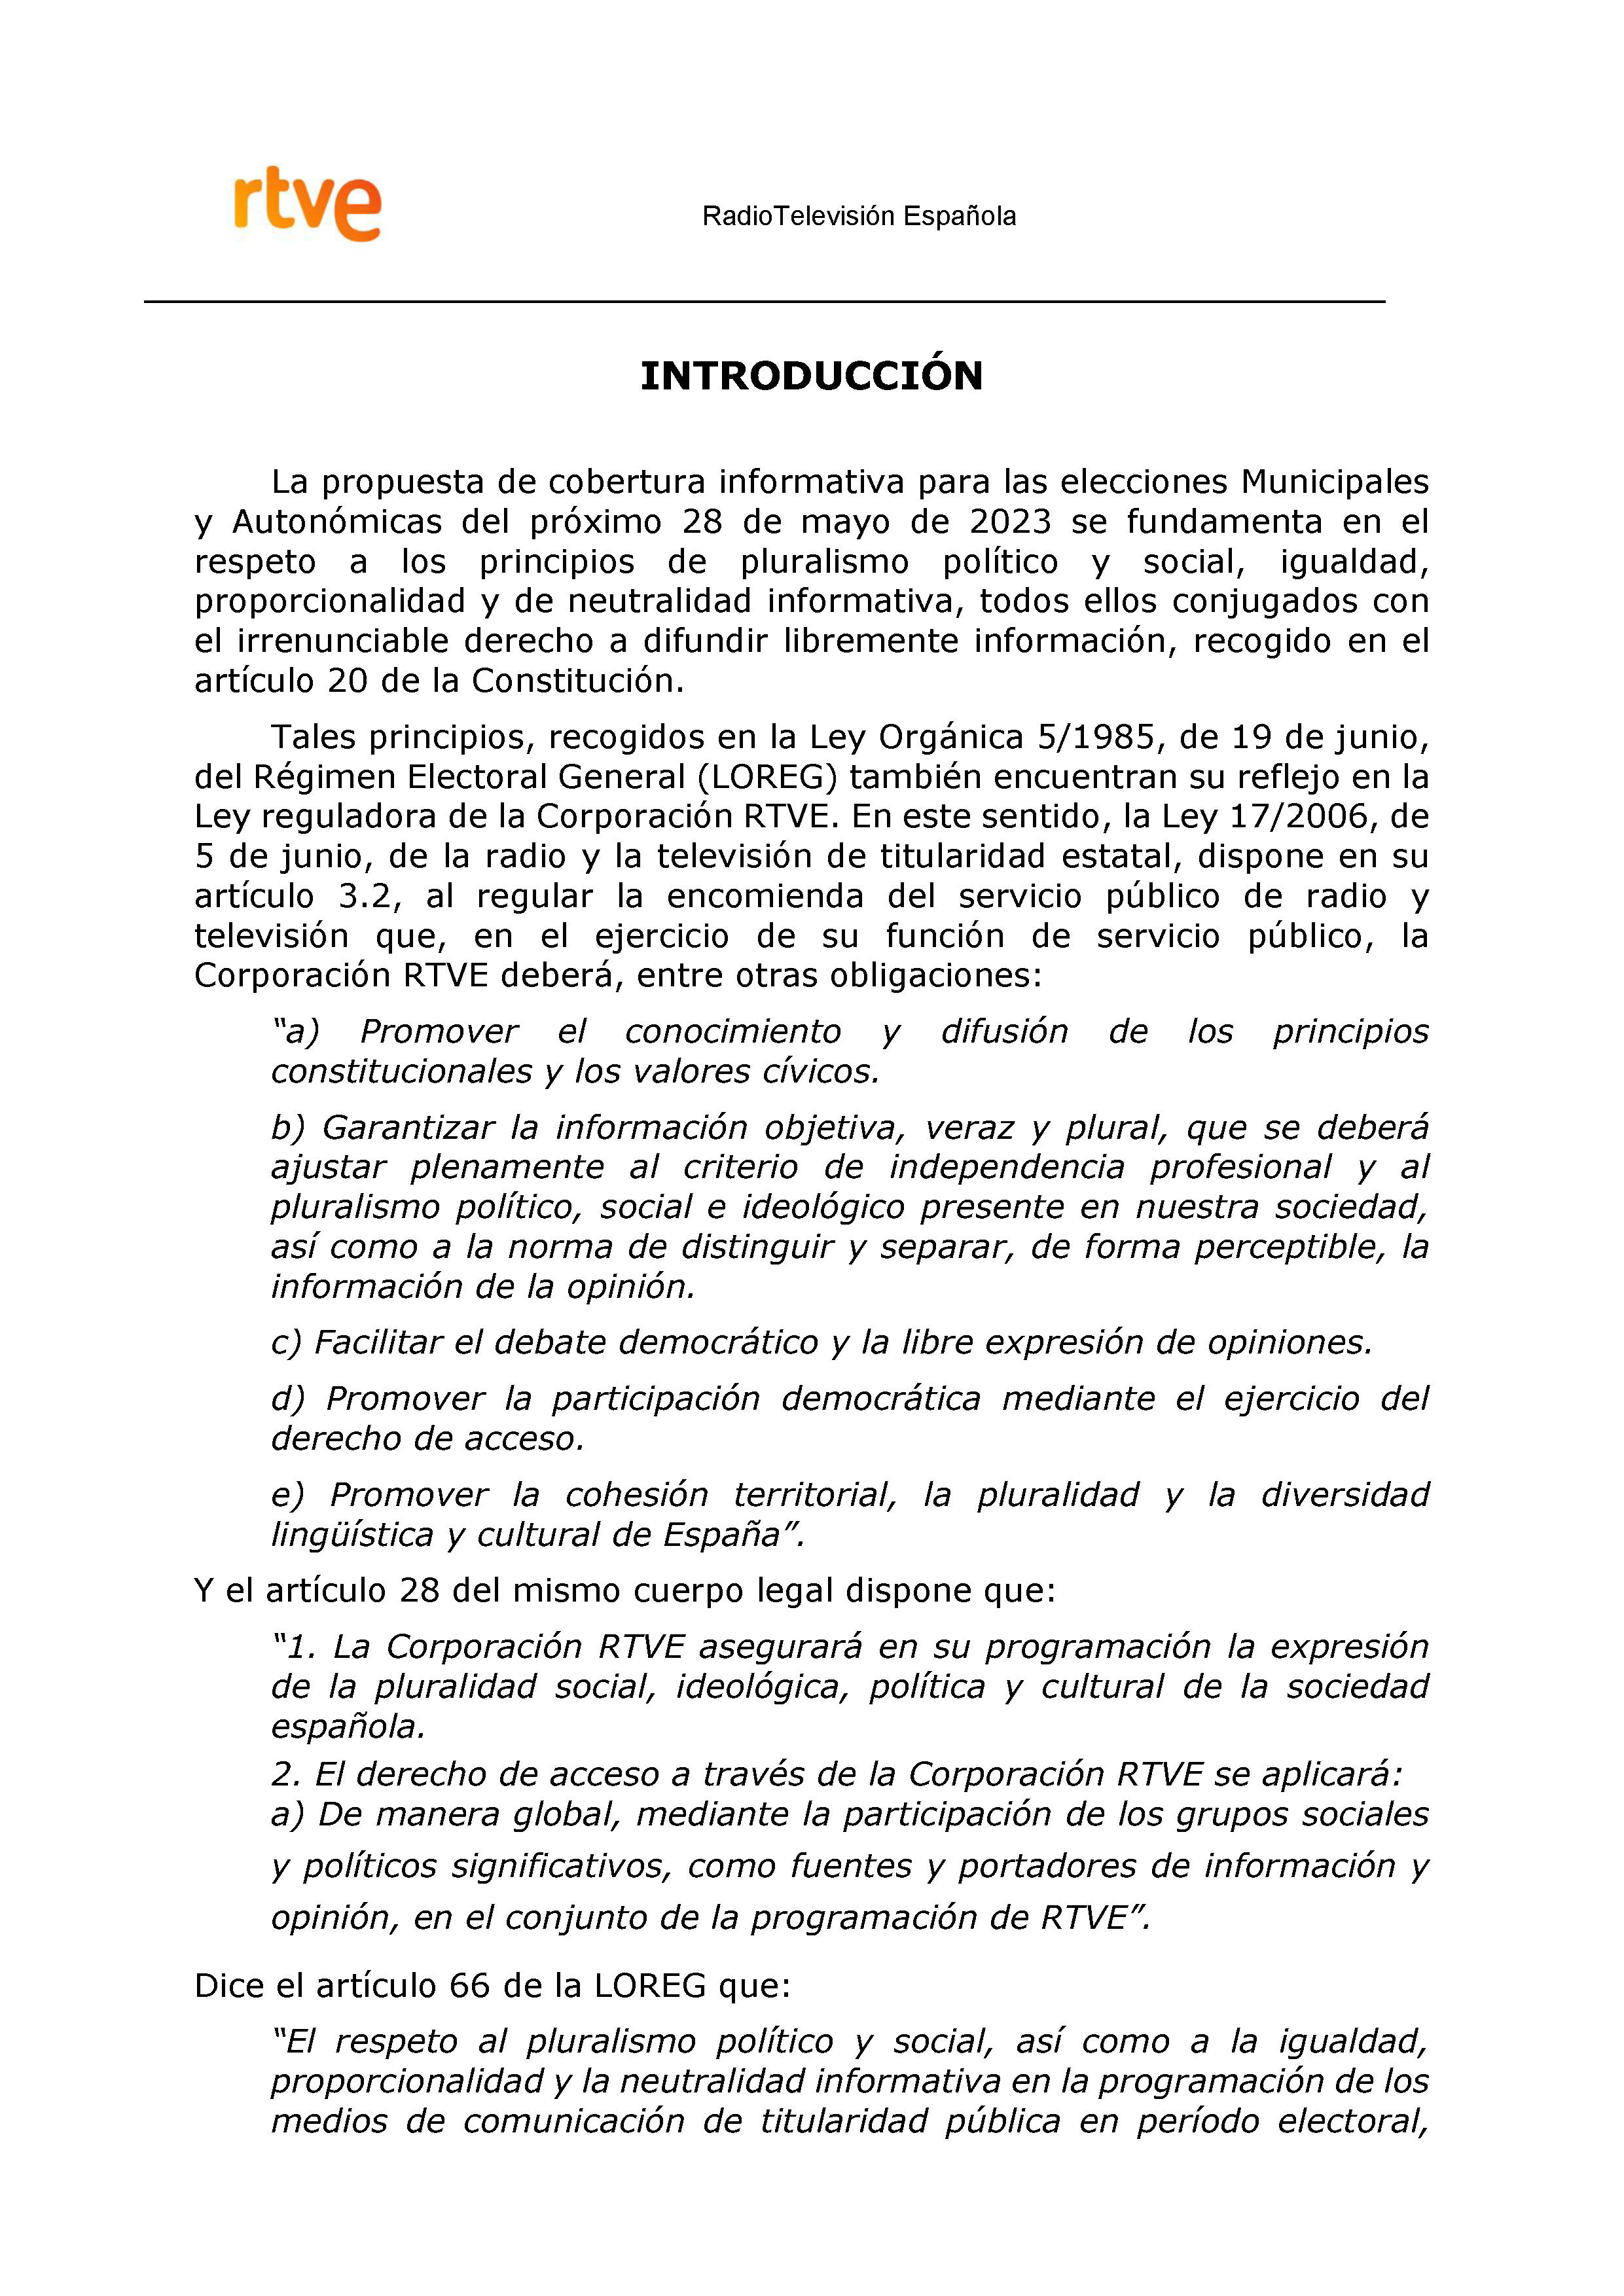 PLAN DE COBERTURA INFORMATIVA RTVE en Extremadura ELECCIONES MUNICIPALES Y AUTONÃ“MICAS Pag 2